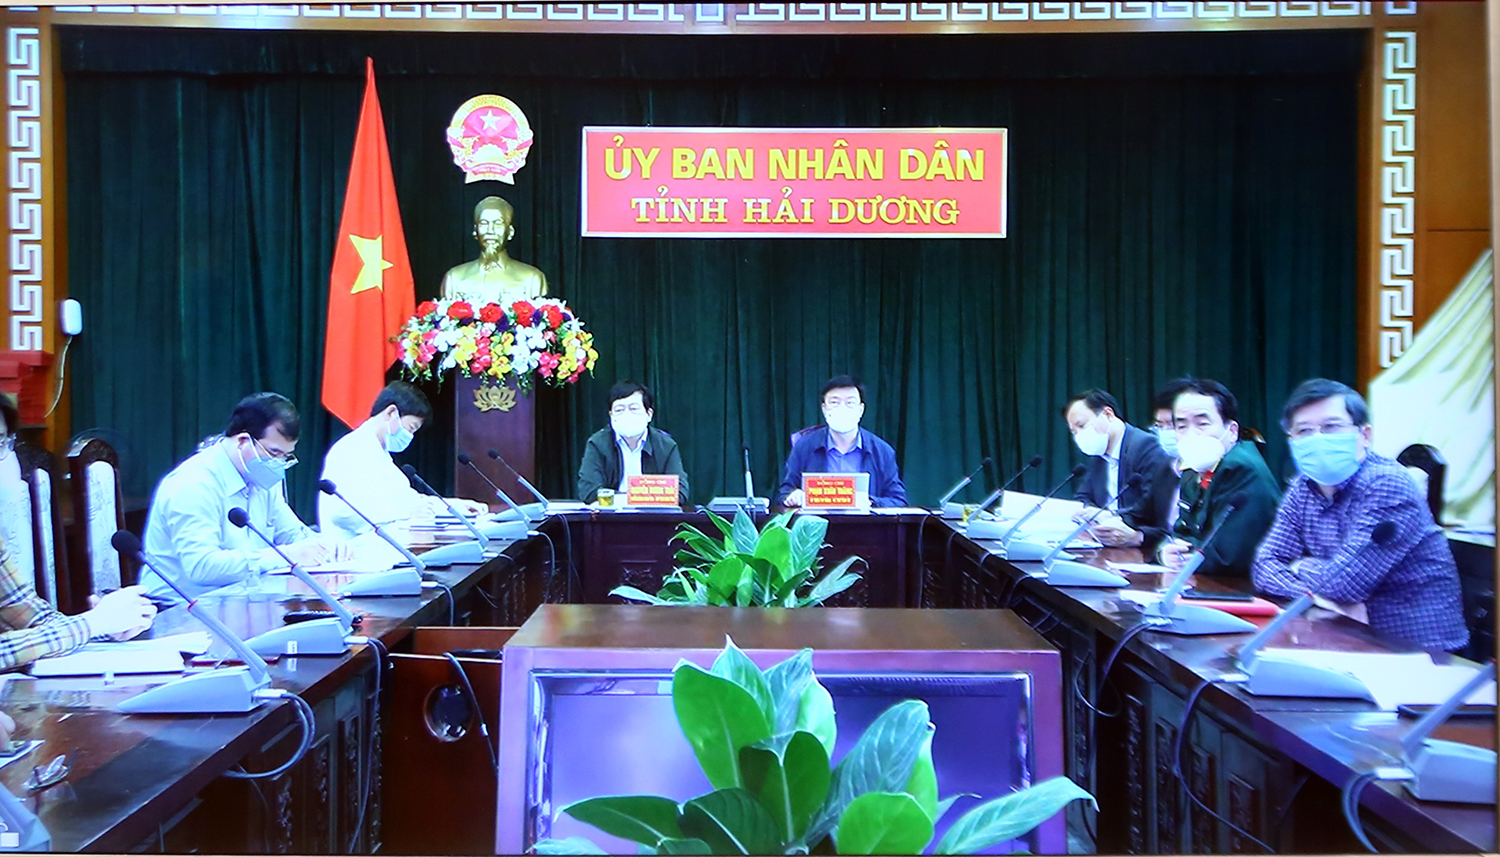 Lãnh đạo tỉnh Hải Dương báo cáo trực tuyến tại cuộc họp. Ảnh: VGP/Đình Nam